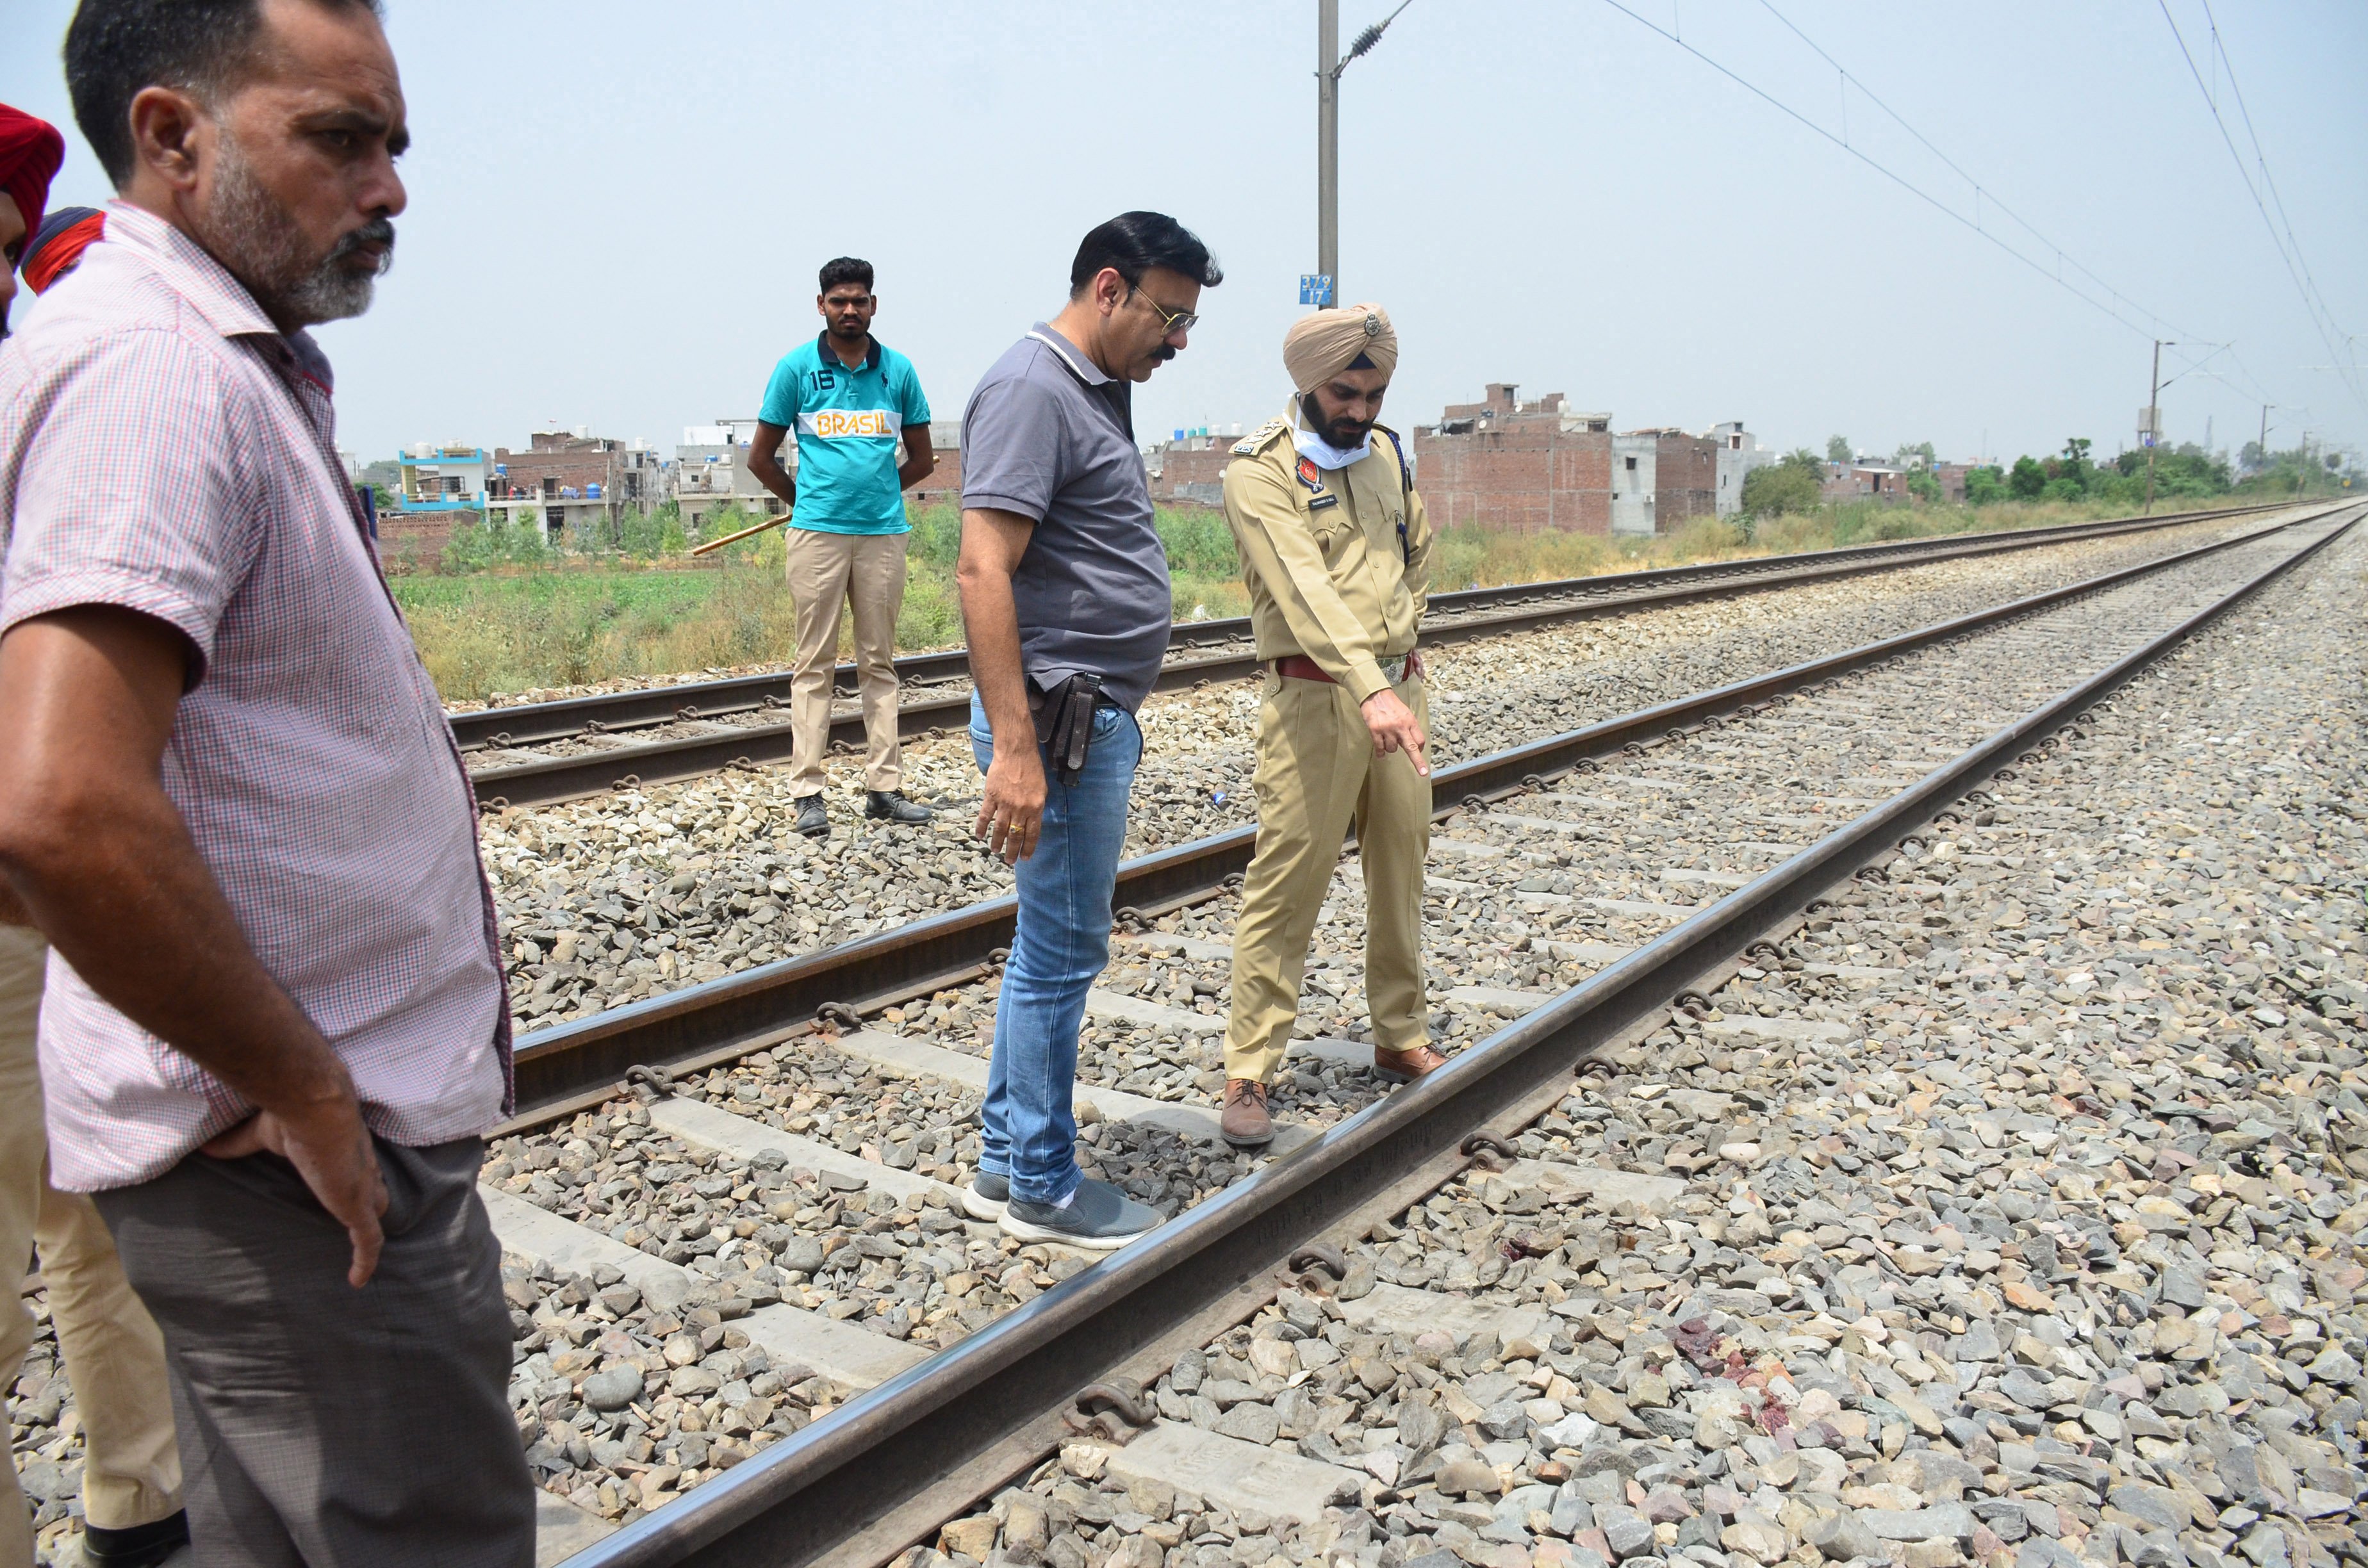 Man found dead on railway tracks